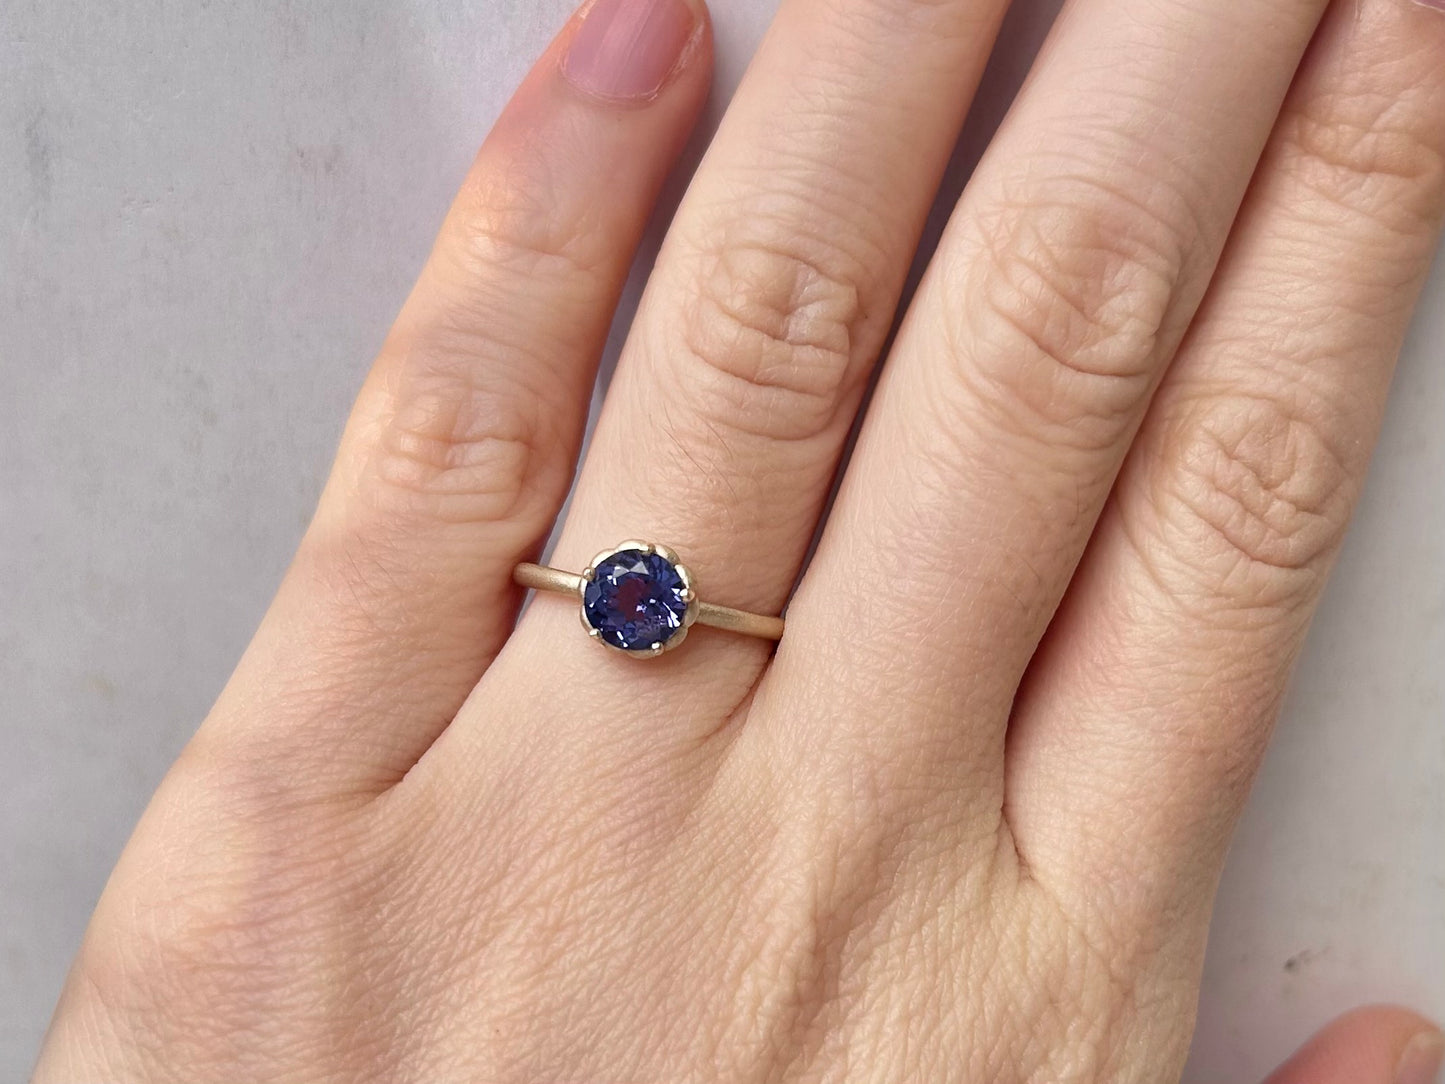 金の指環『紫』